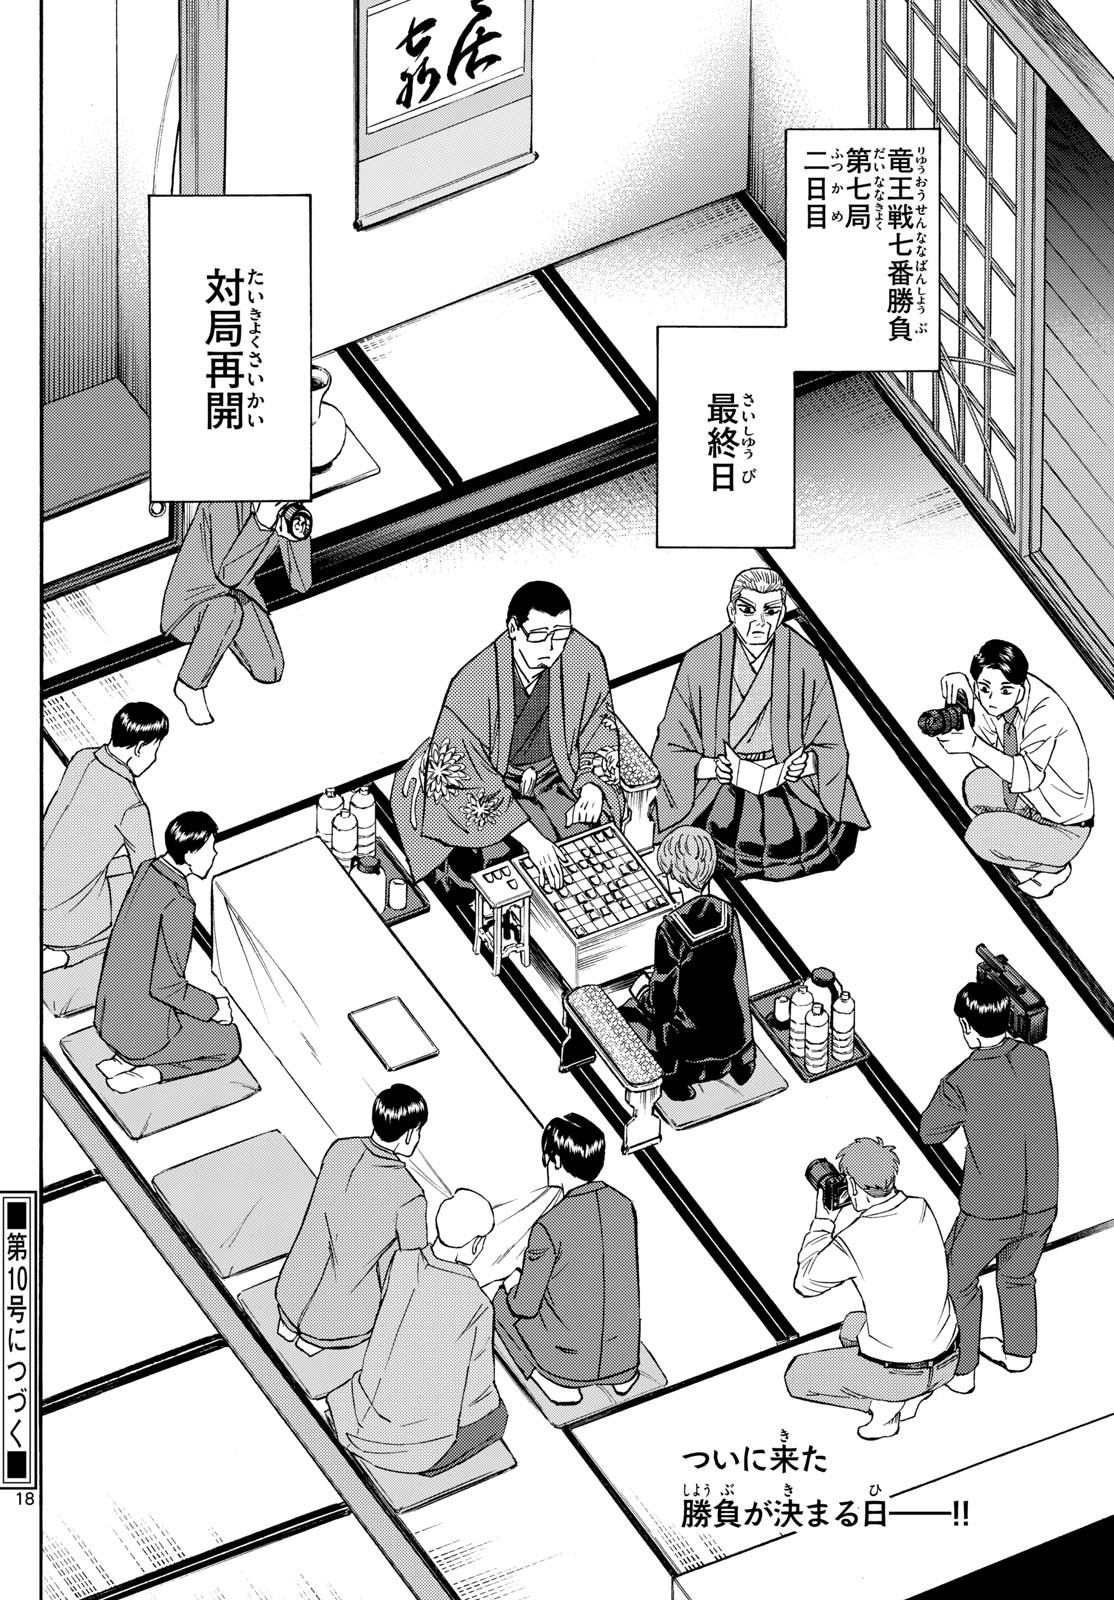 Ryu-to-Ichigo - Chapter 176 - Page 18